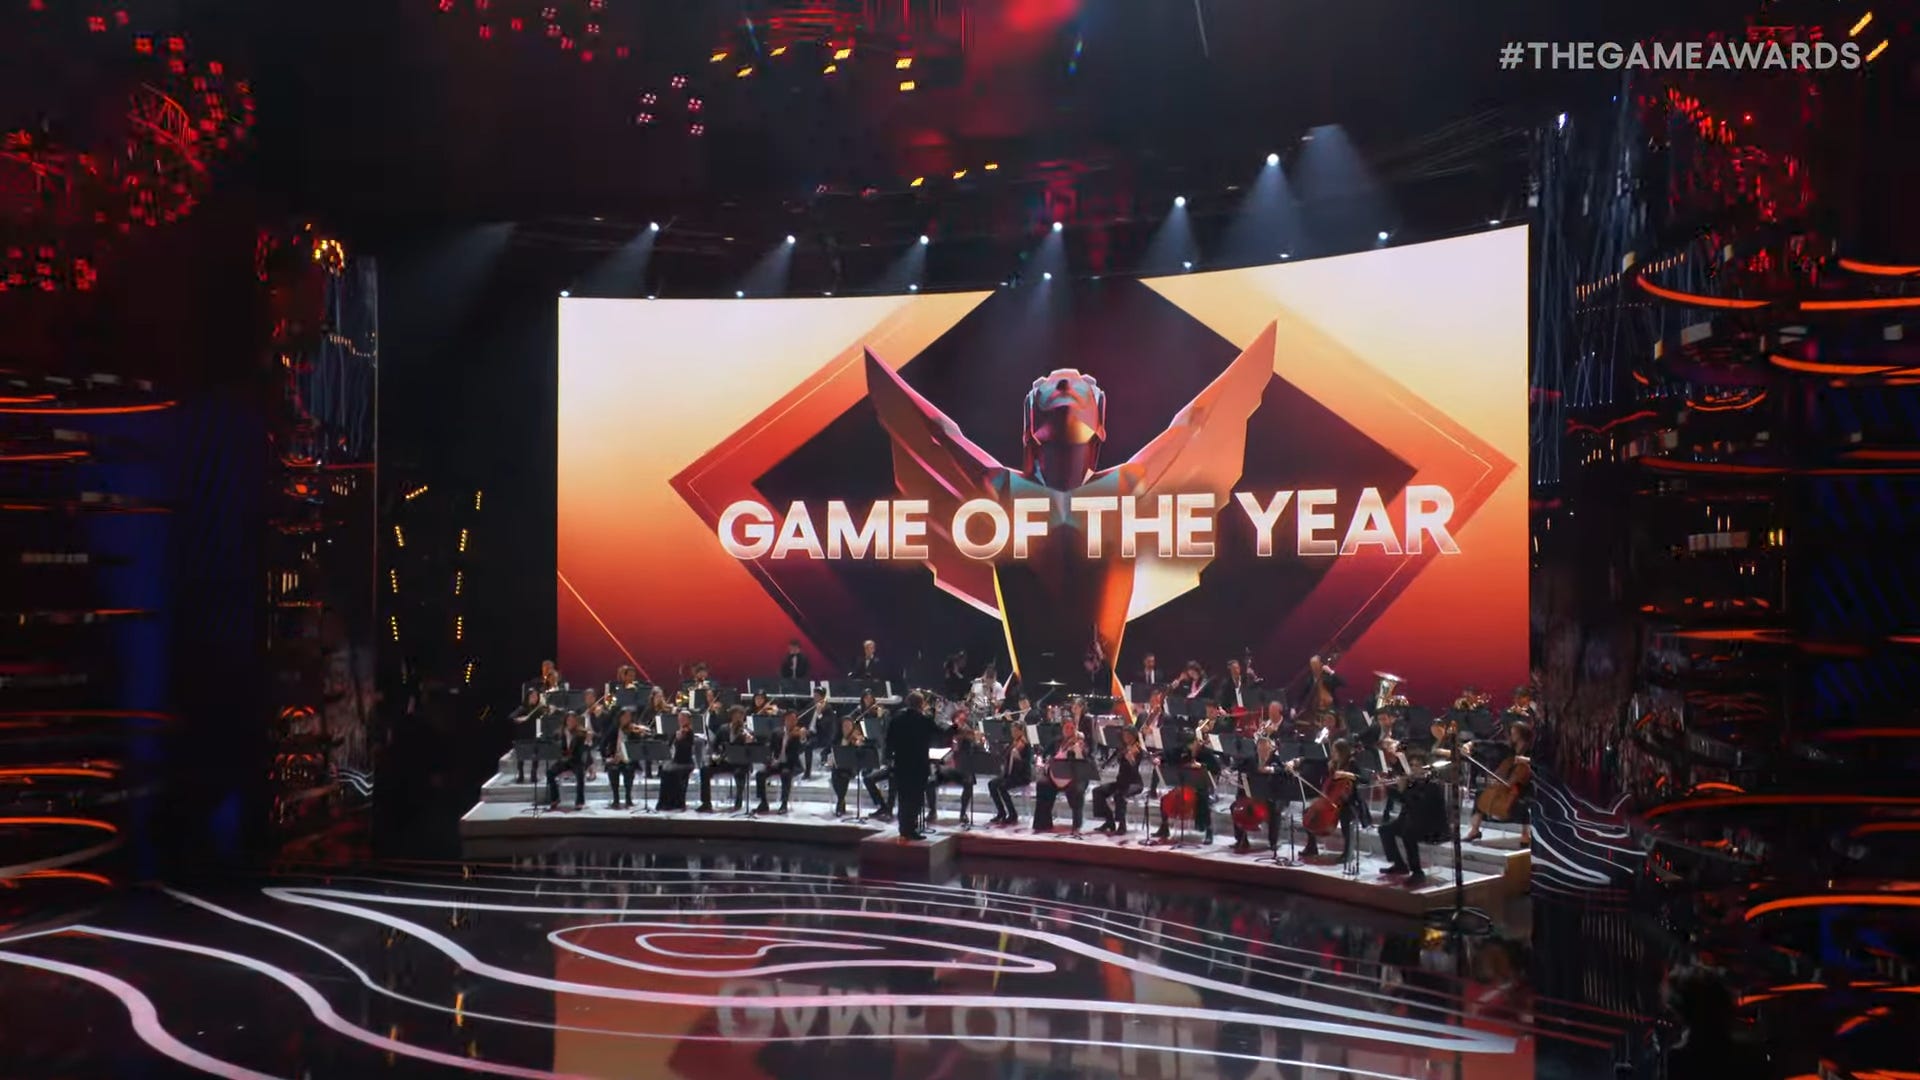 حطمت The Game Awards 2023 الرقم القياسي الخاص بها في نسبة المشاهدة مع 118 مليون بث مباشر